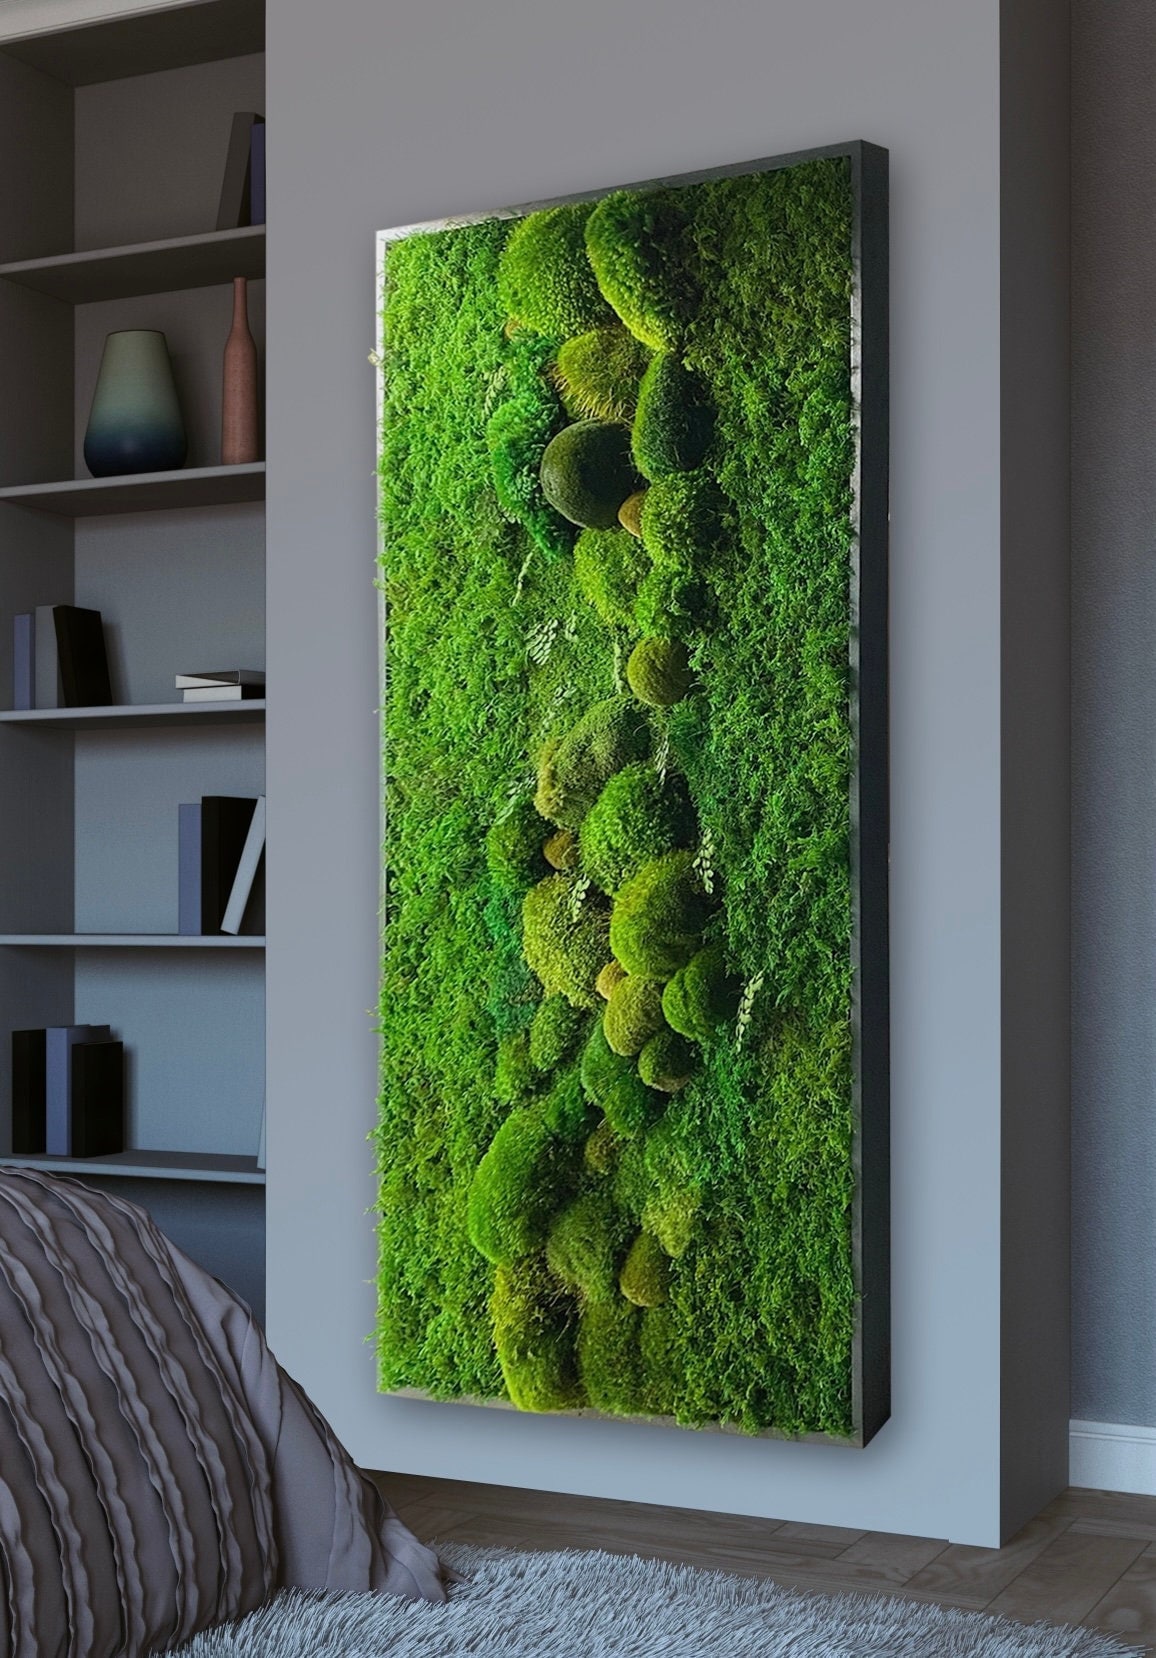 Driftwood Moss Centerpiece by Moss Art Installations